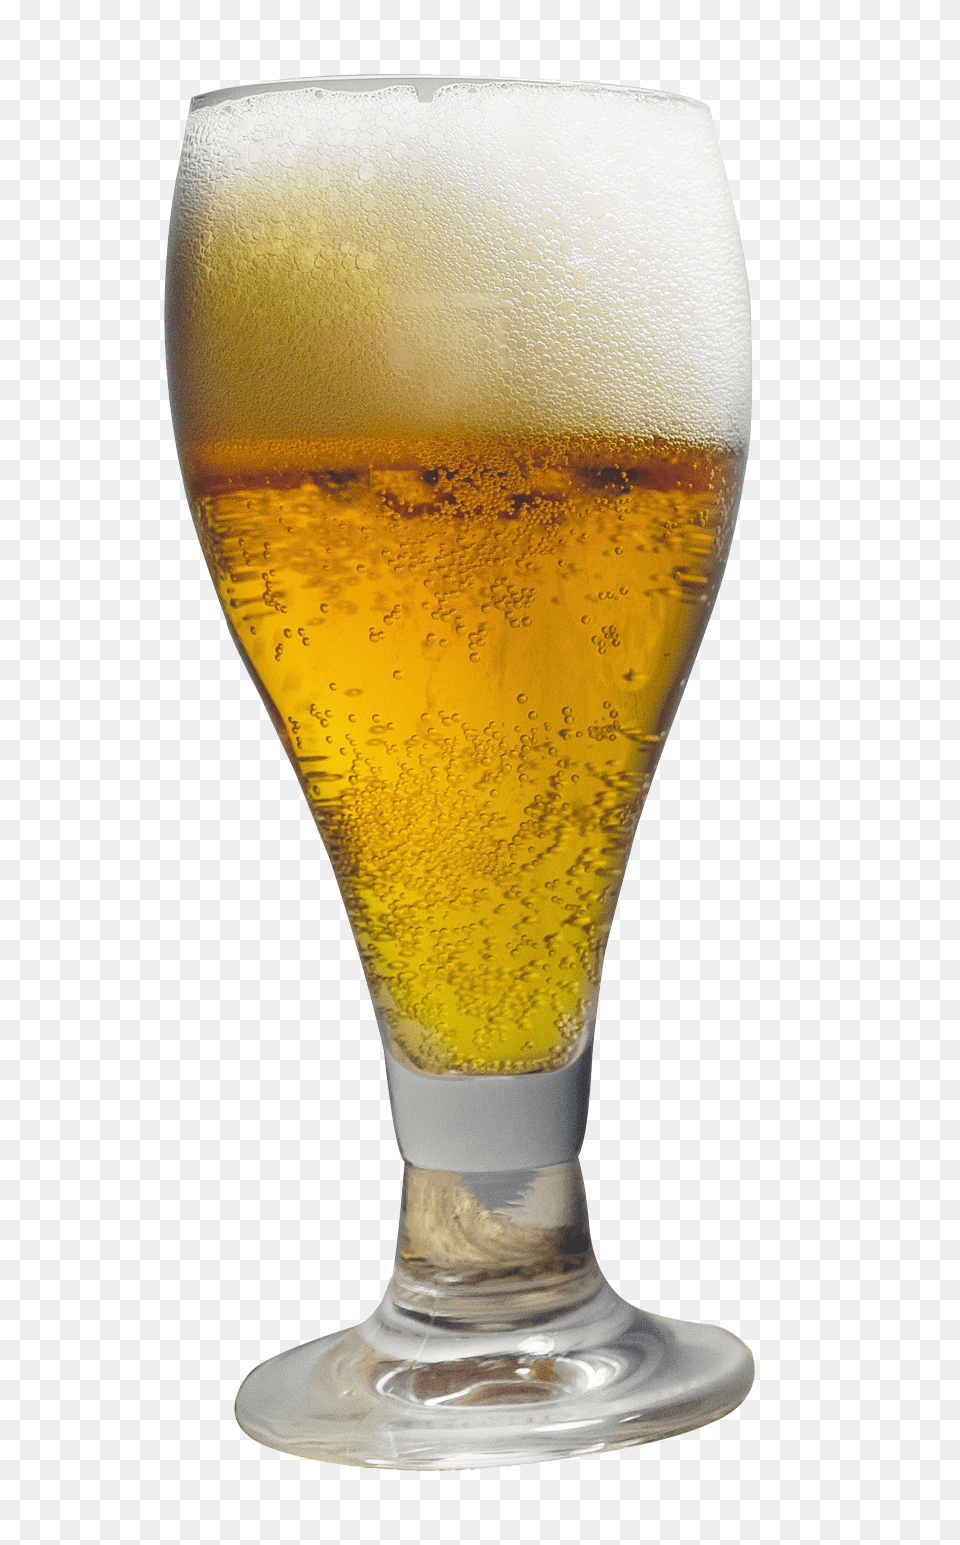 Pngpix Com Beer Glass, Alcohol, Beer Glass, Beverage, Lager Free Transparent Png